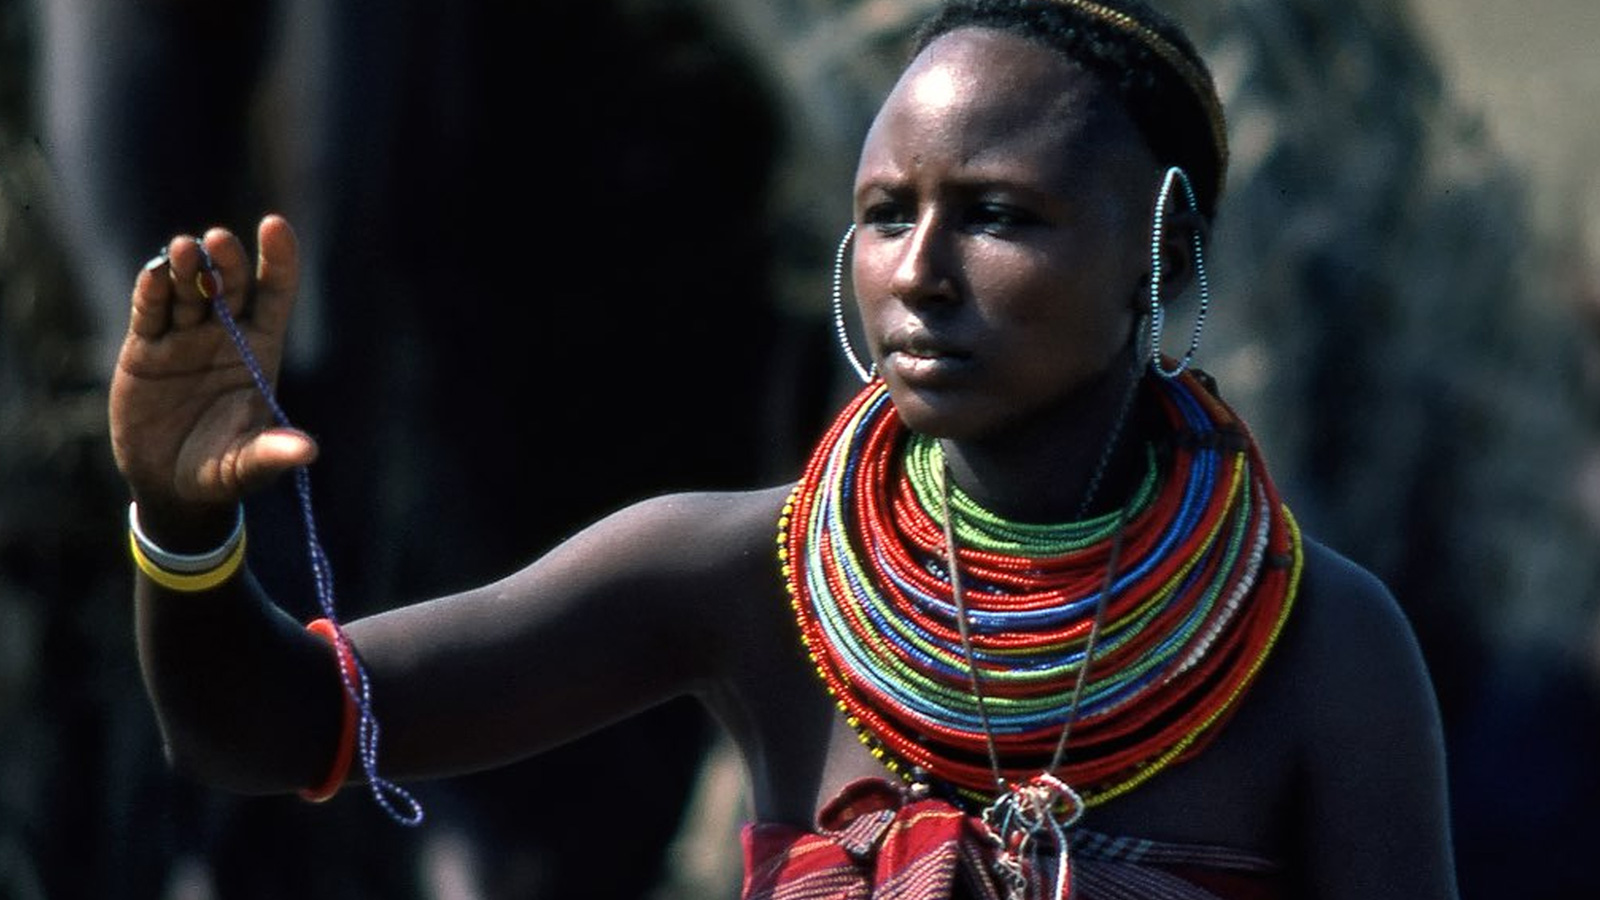 ‪قبيلة المولو تعيش في كينيا‬ (الصحافة الروسية)